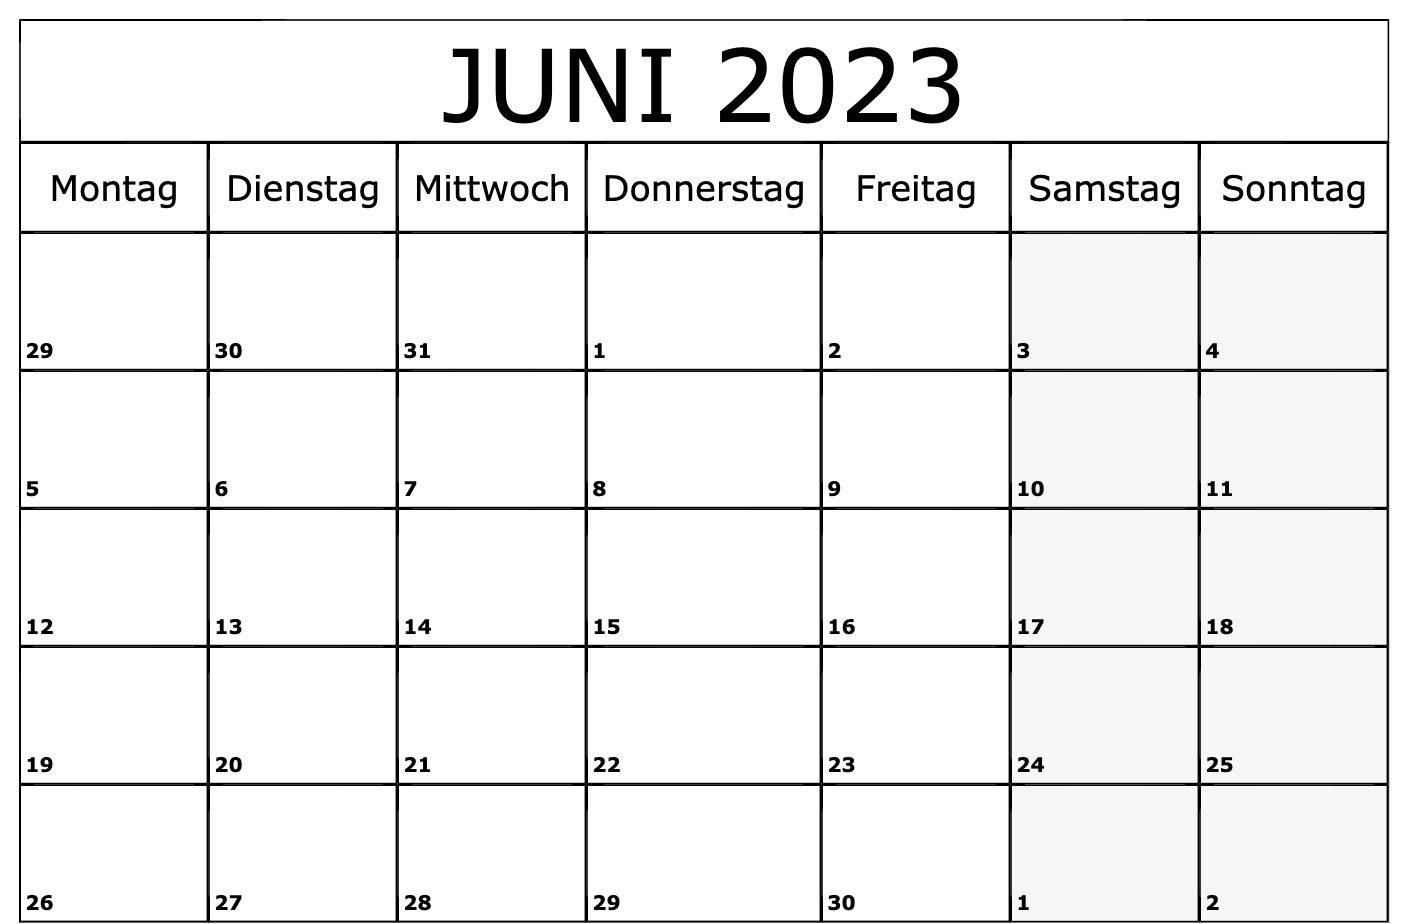 Machen Sie sich bereit für Juni 2023 mit unserem kostenlosen Kalender zum Ausdrucken